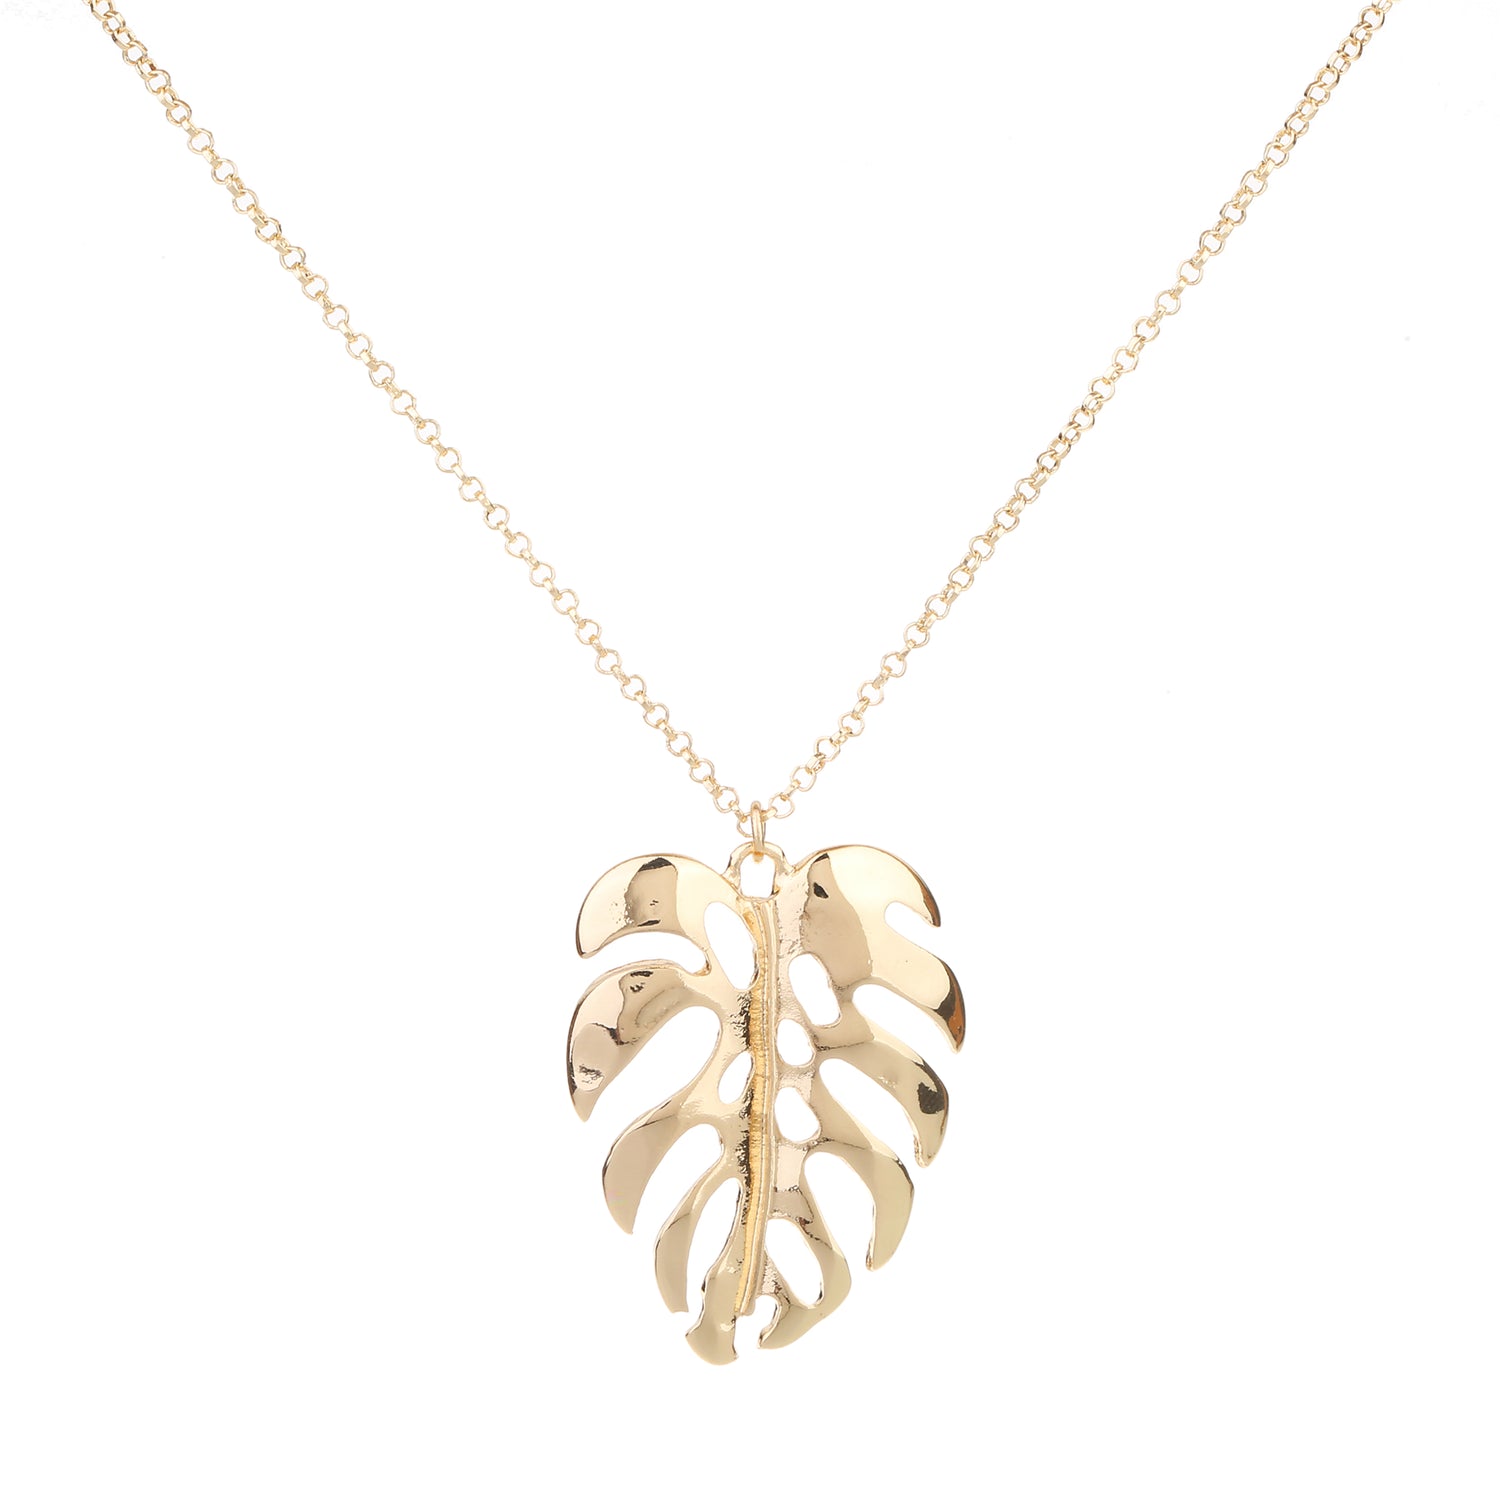 Palm necklace light gold